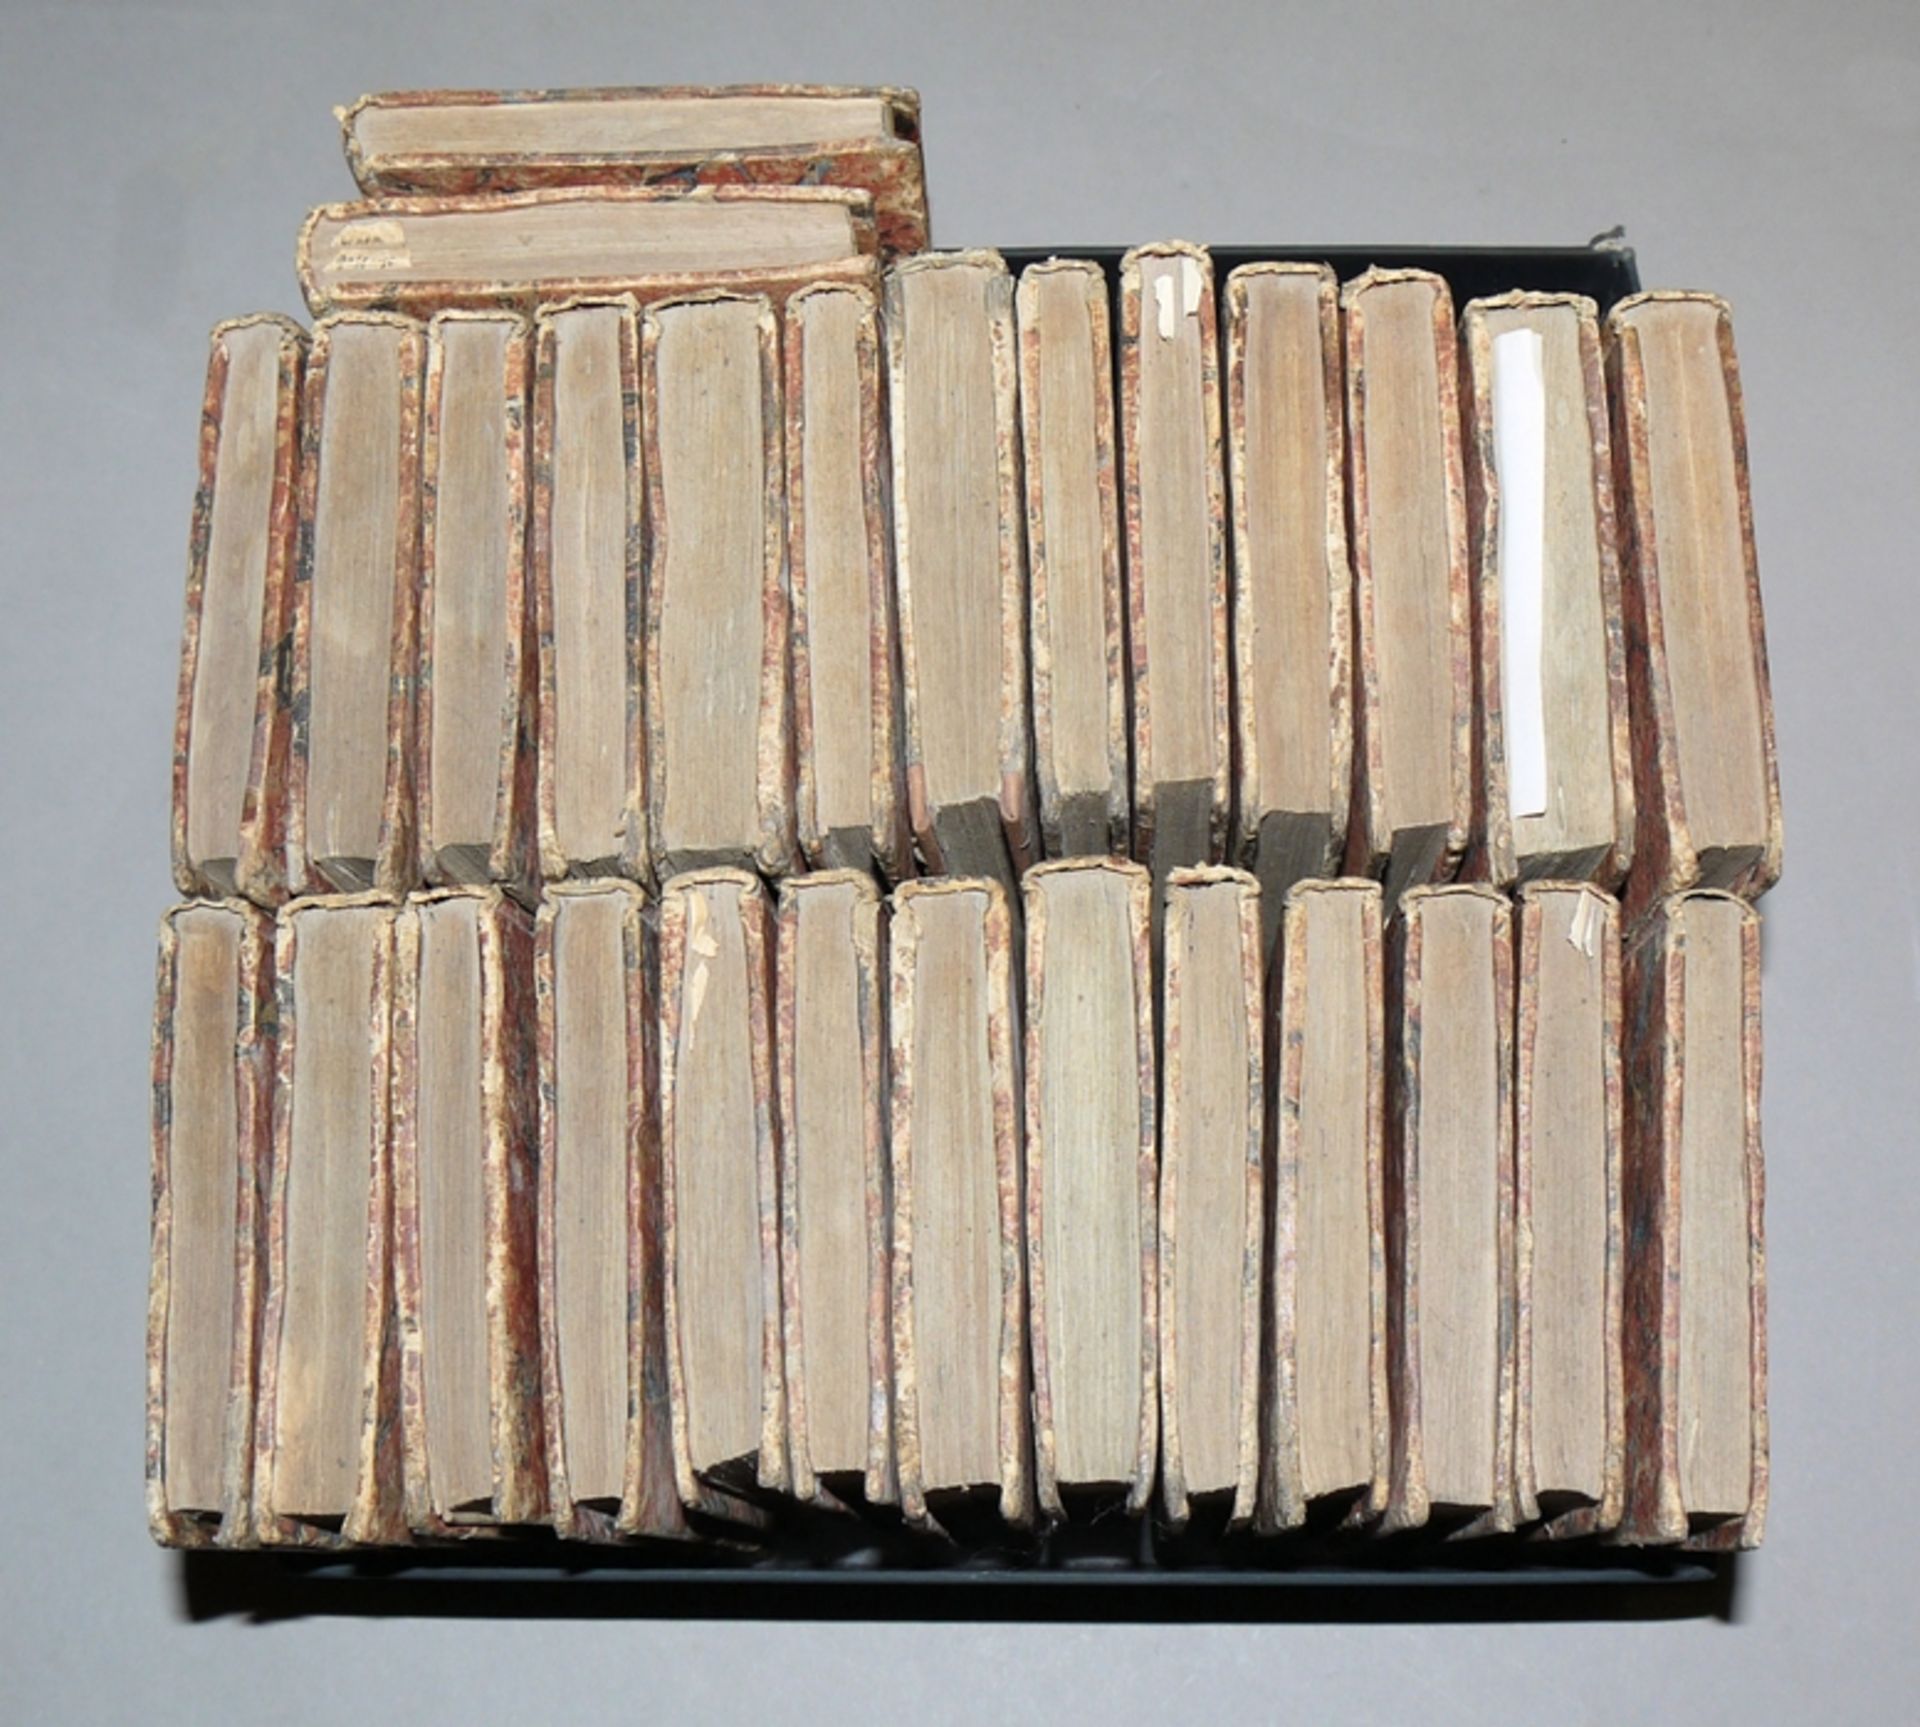 Lessing's Sämmtliche Werke. 28 of 34 volumes, from 1801-1805